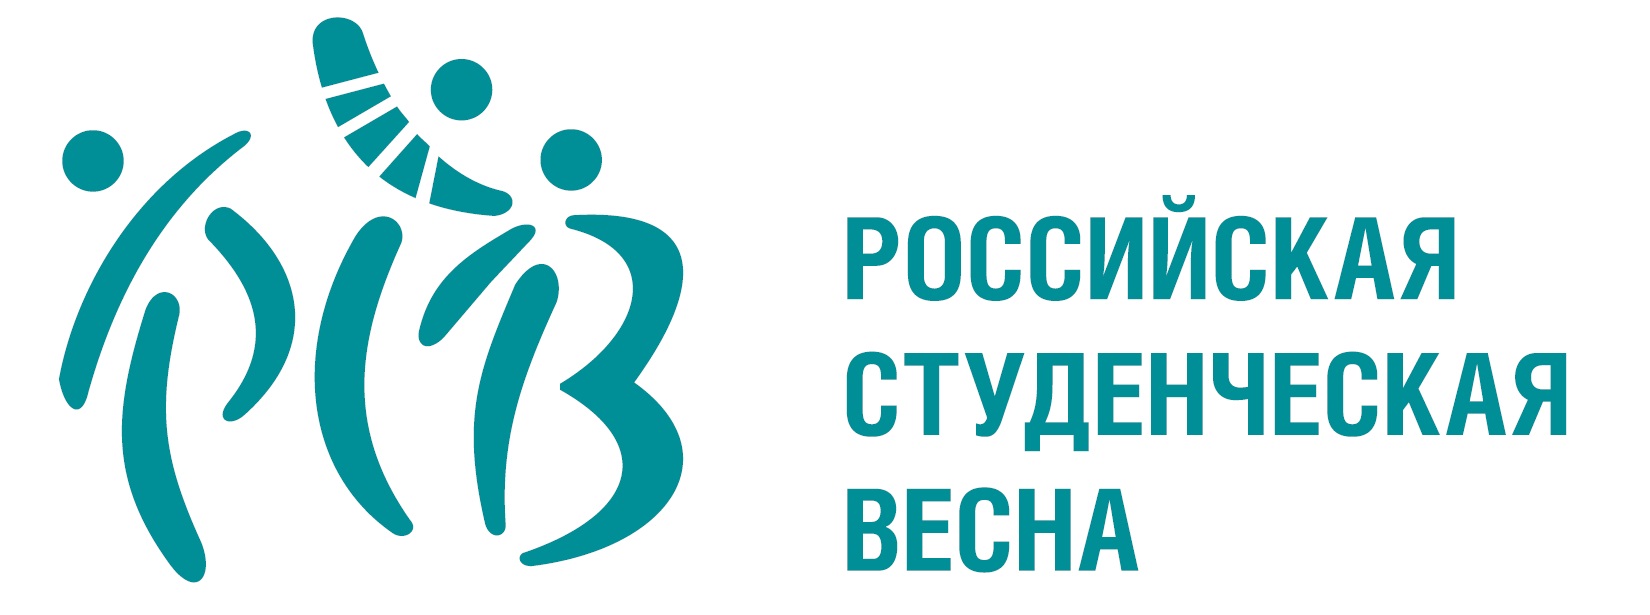 Объявлен конкурс на право проведения XXVIII Всероссийского фестиваля «Российская студенческая весна» в 2020 году